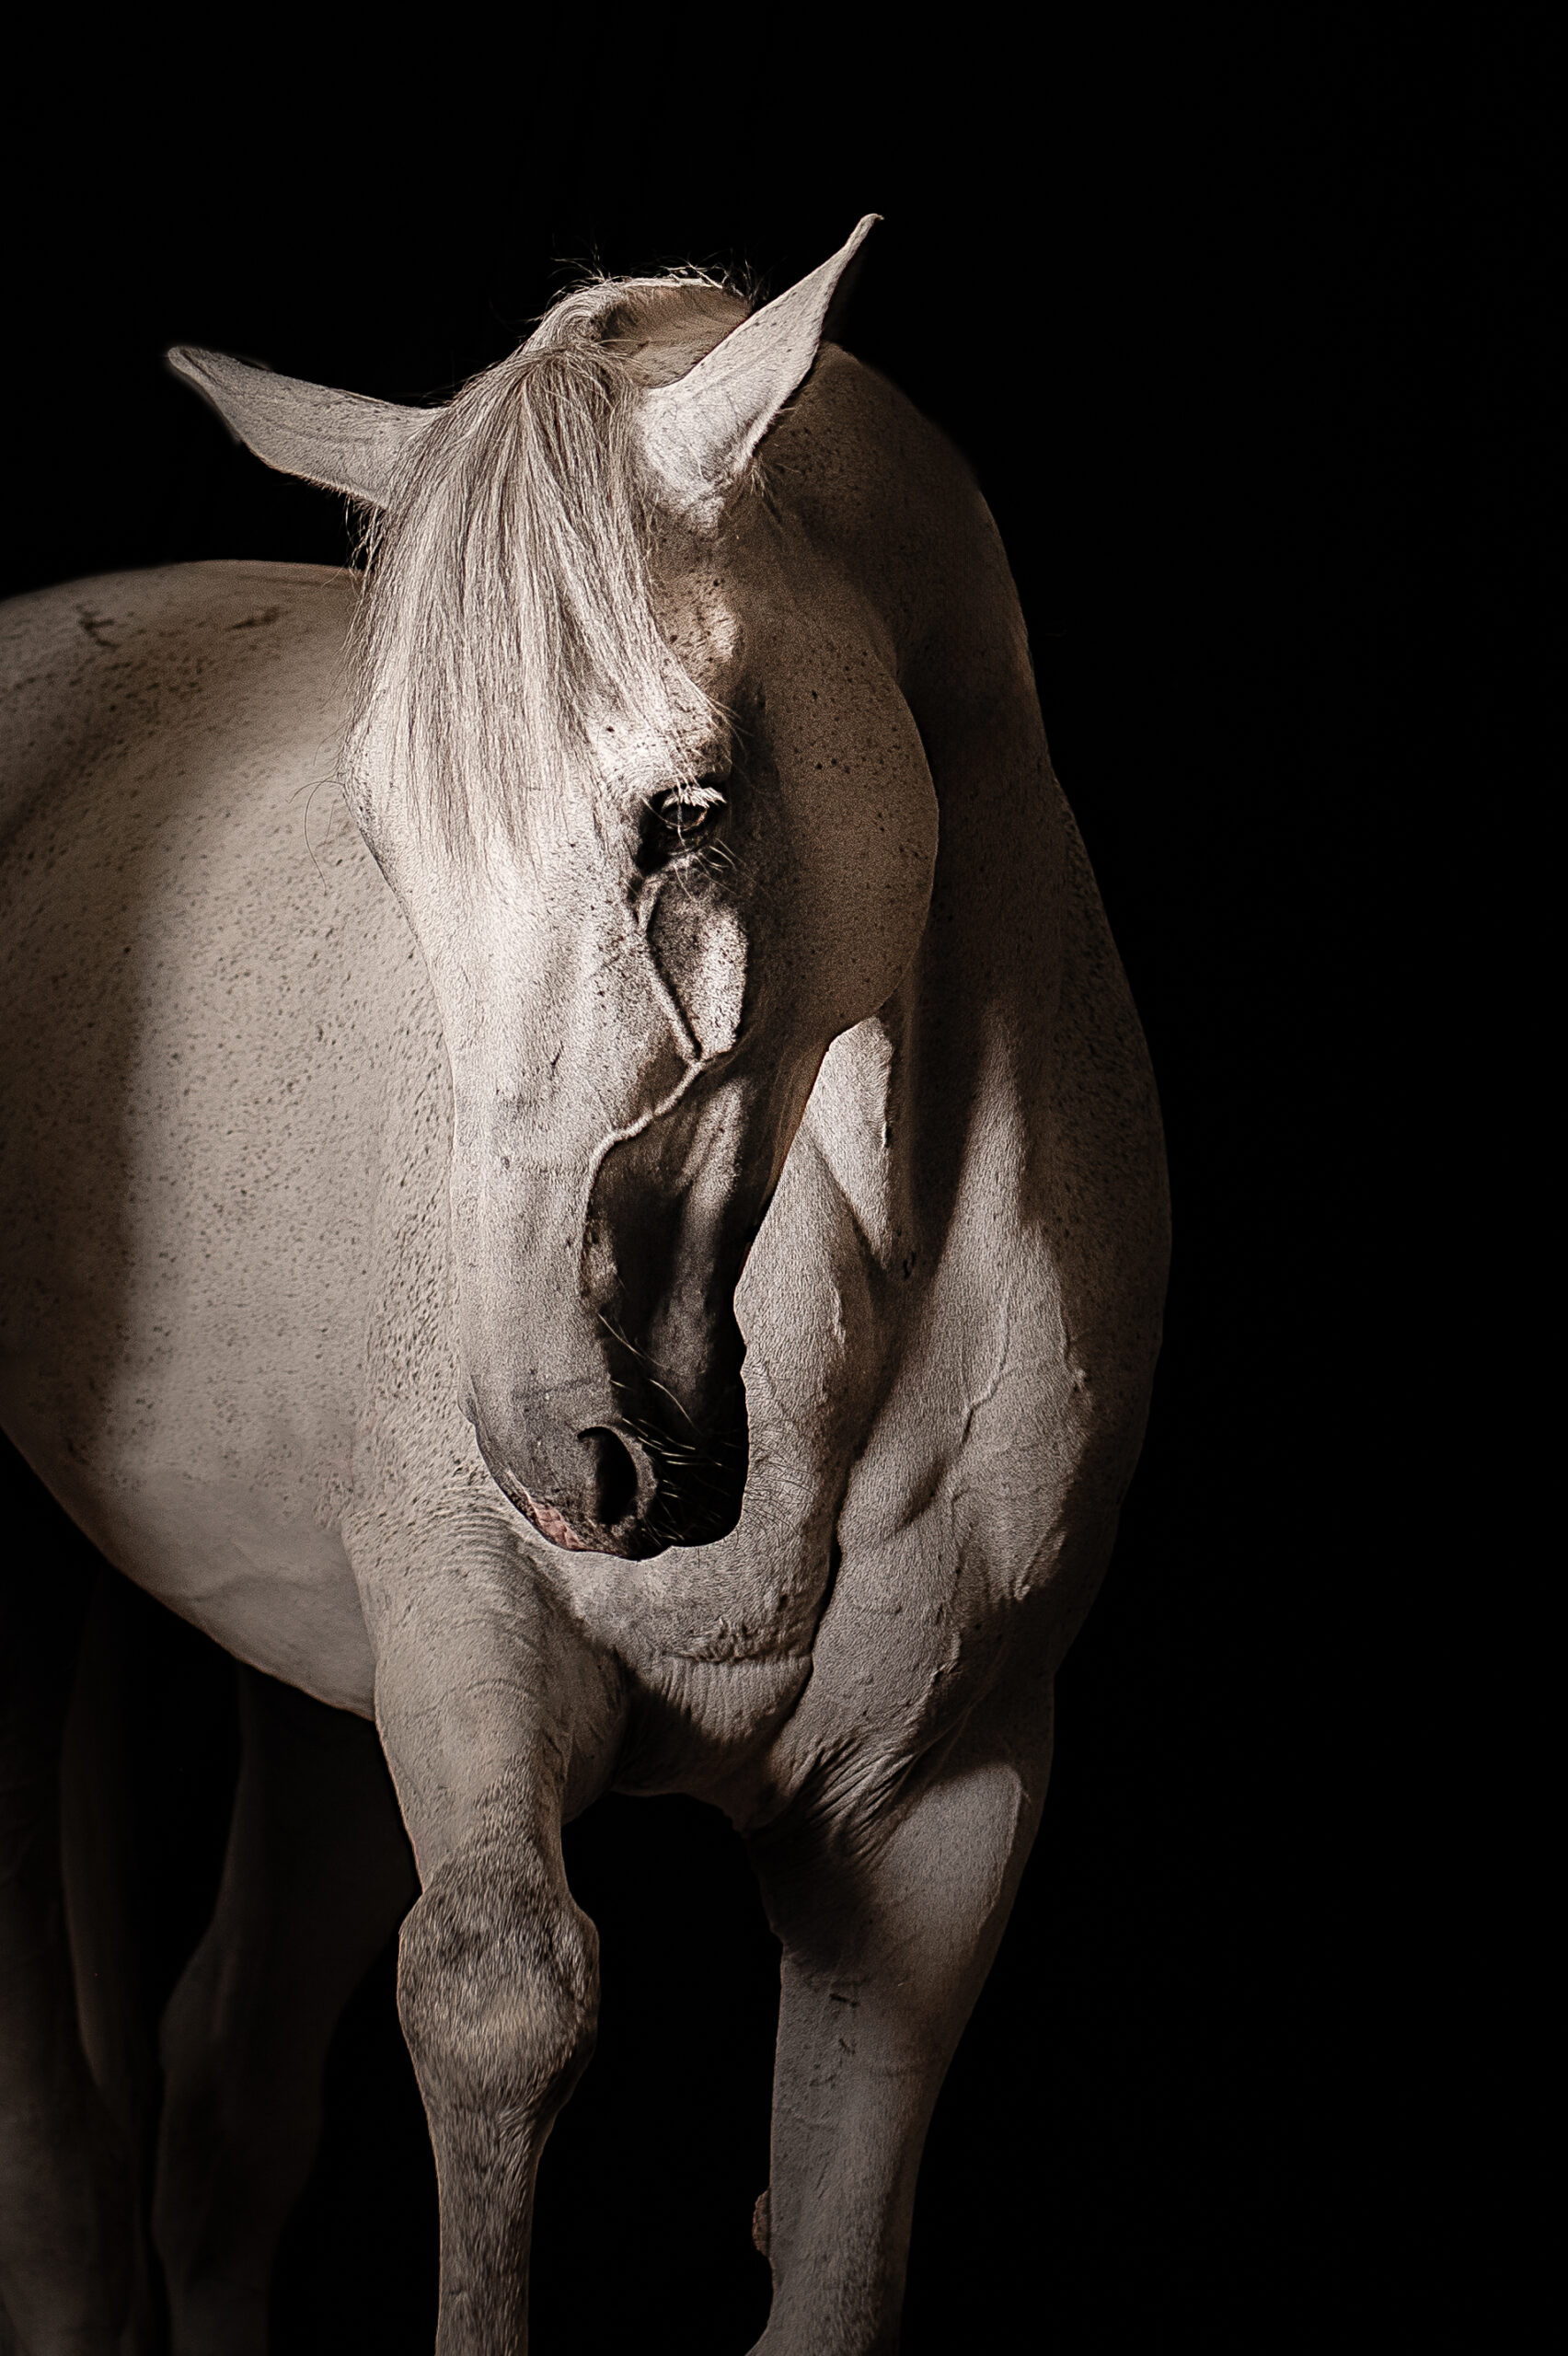 chevaux oeuvre d'art fond noir studio cheval paillette alsace lorraine grand est photographe professionnelle animalier beauté equestre